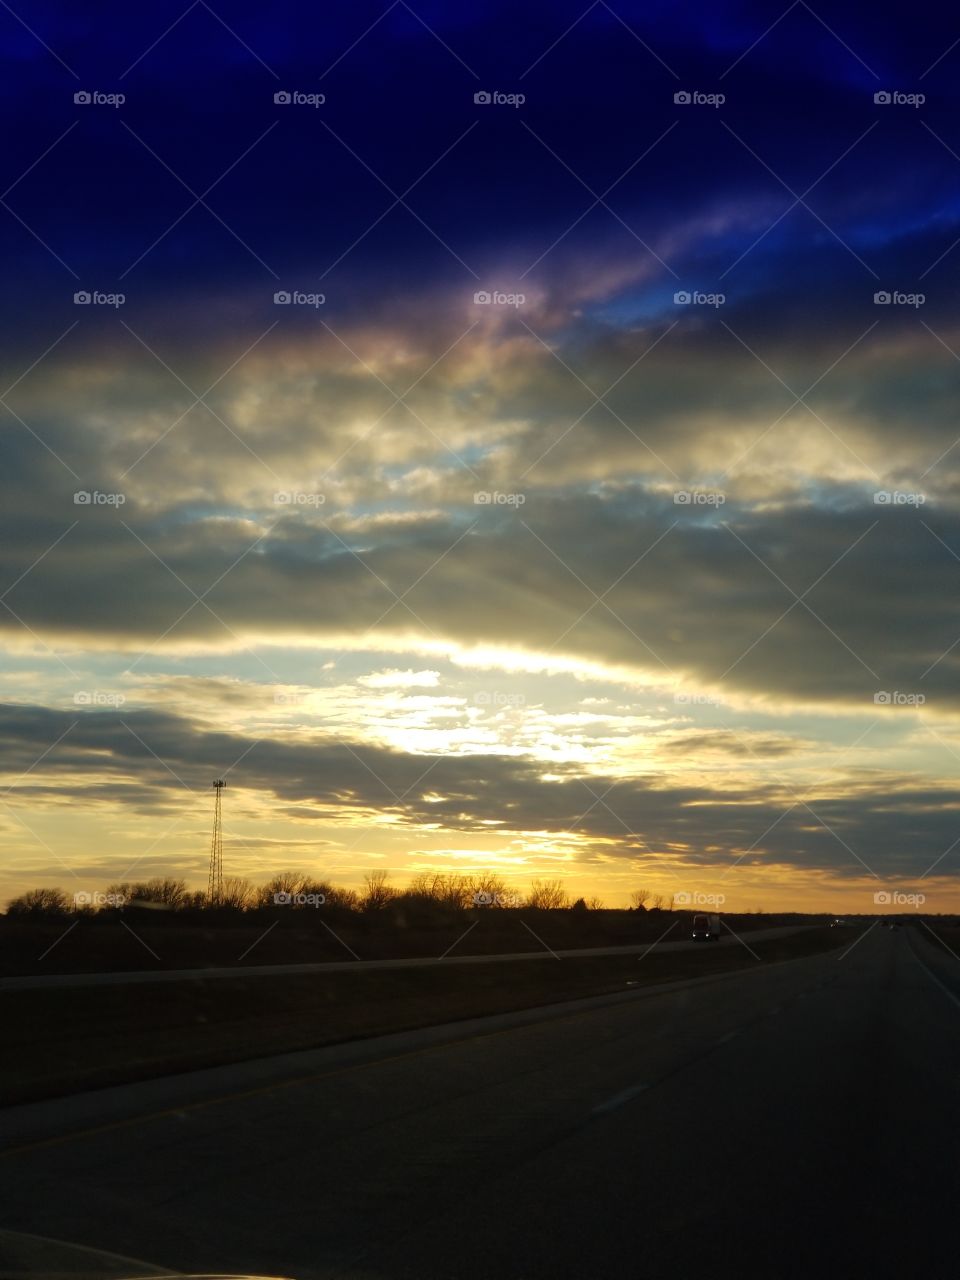 Kansas Sunset